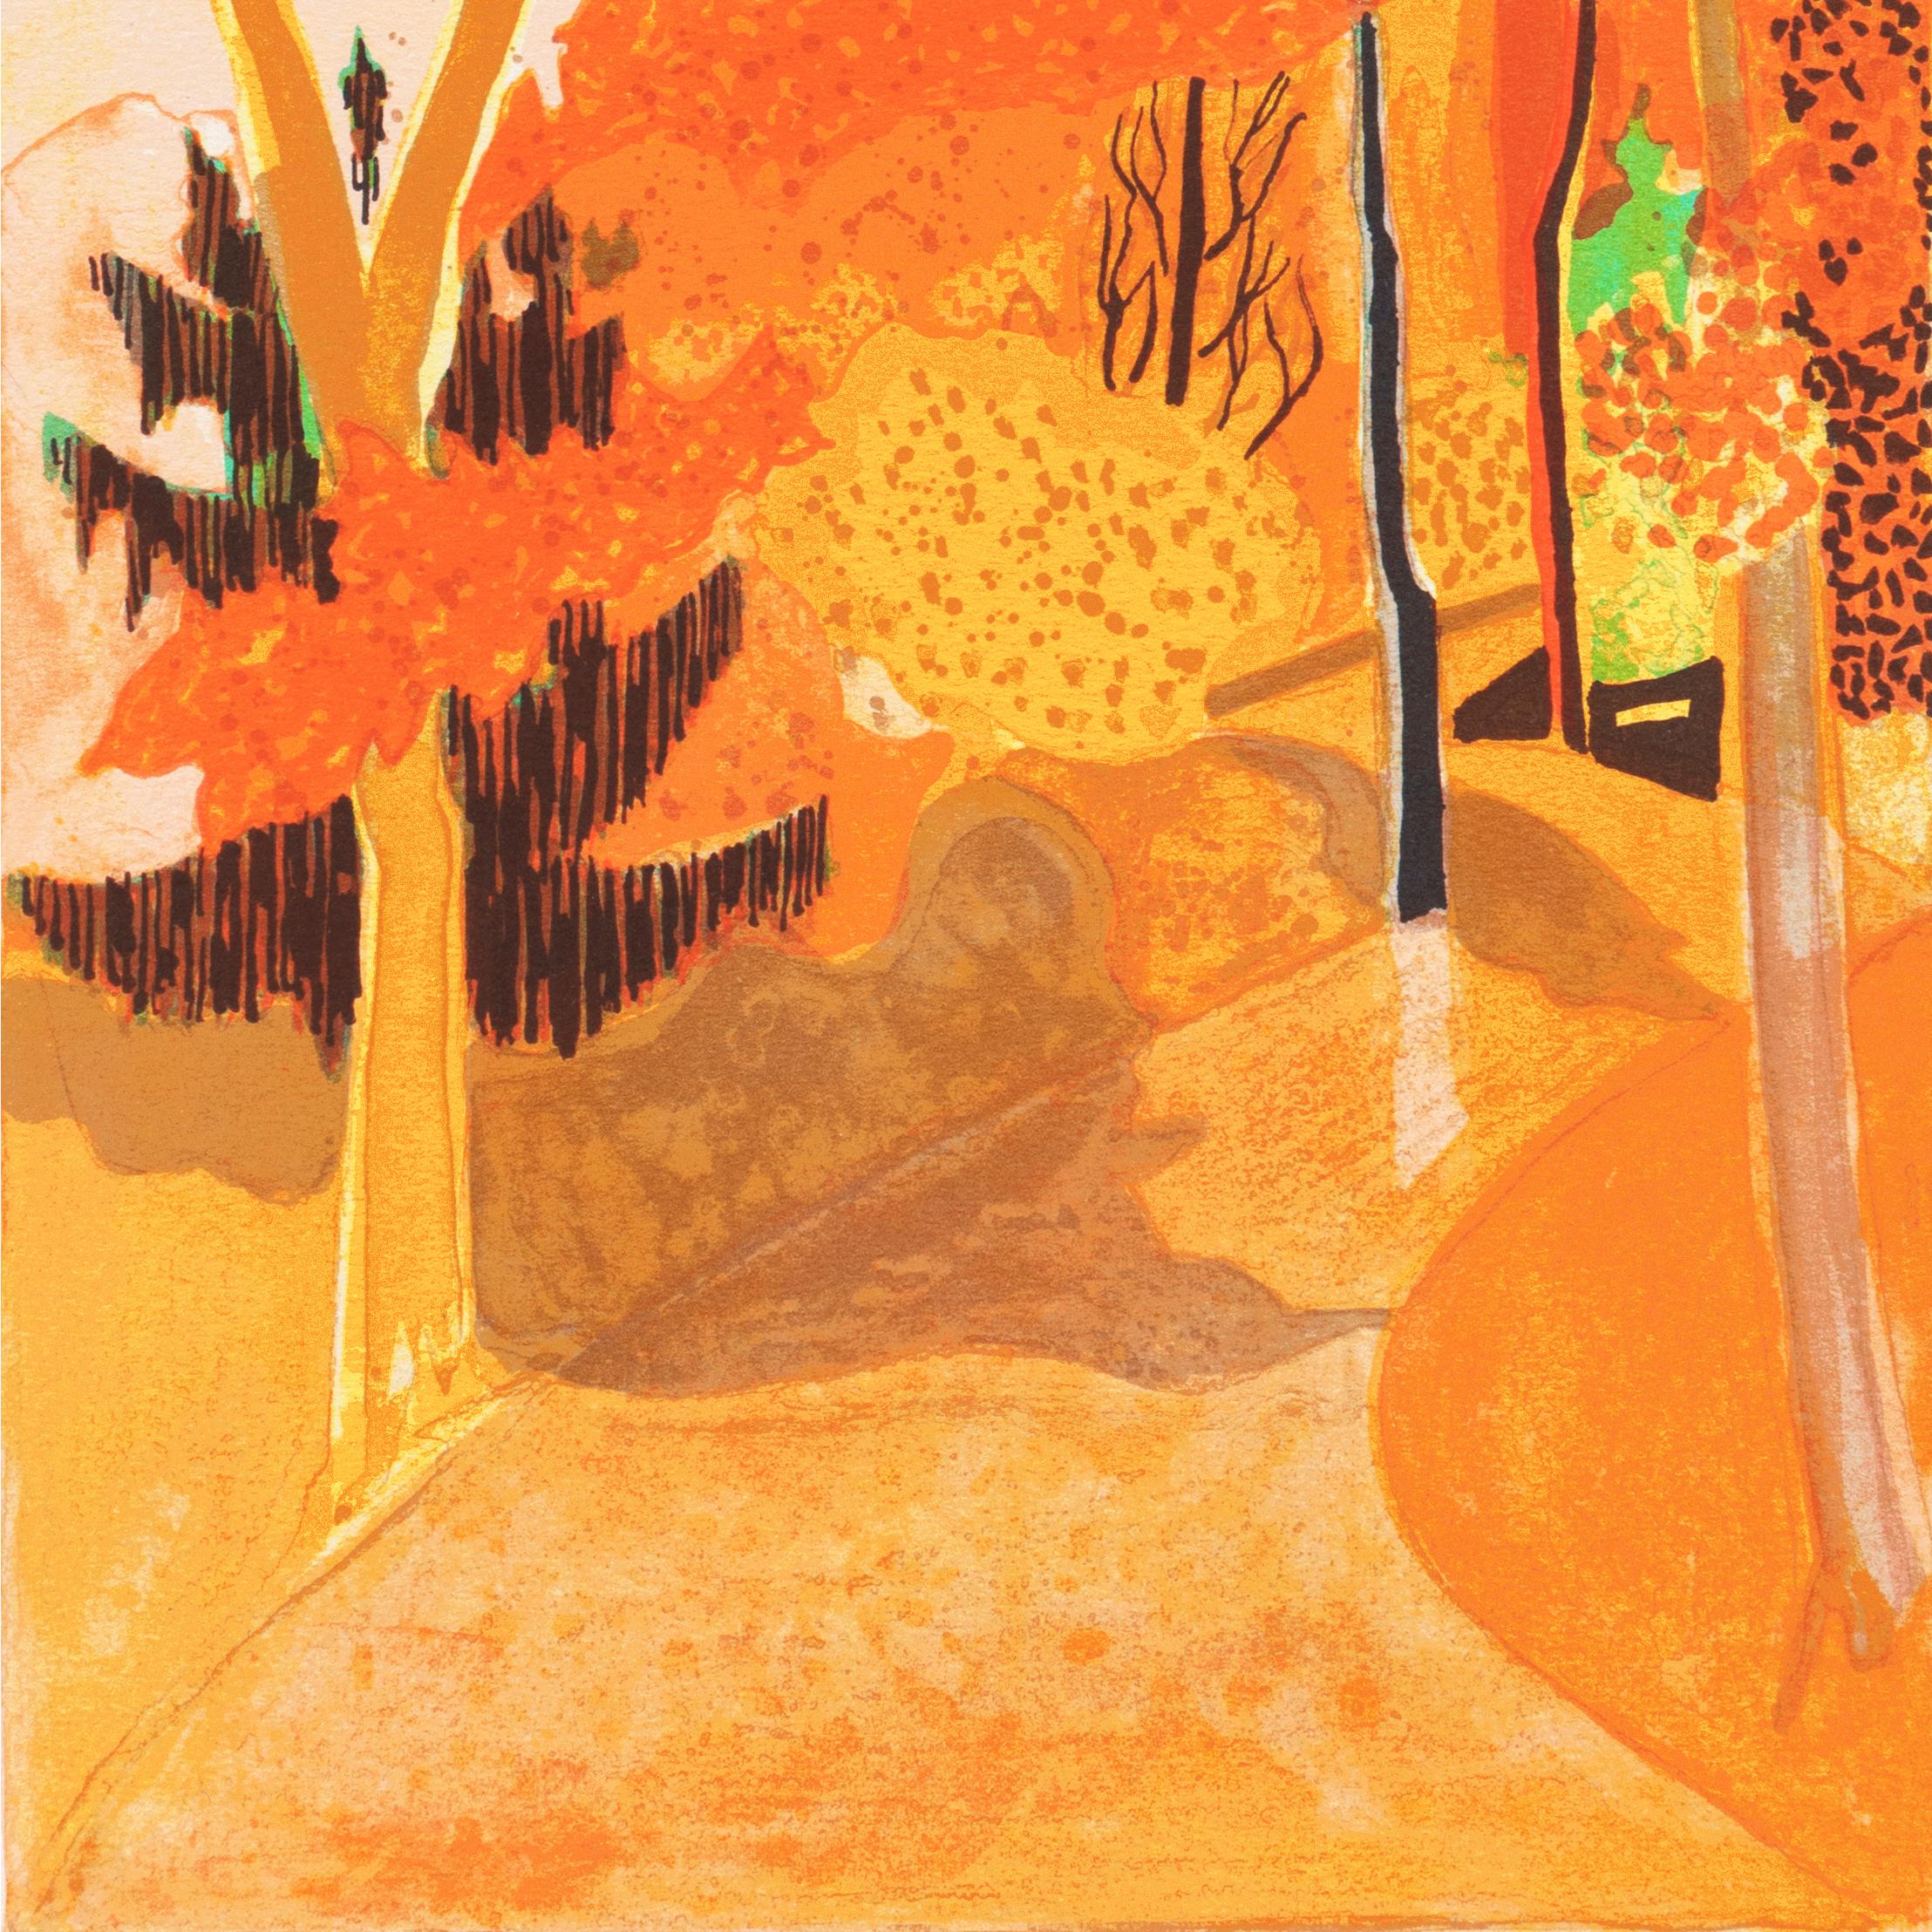 'Provençal Landscape', Post-Impressionist, Academie Chaumiere, Paris Salon - Orange Landscape Print by Georges Lambert